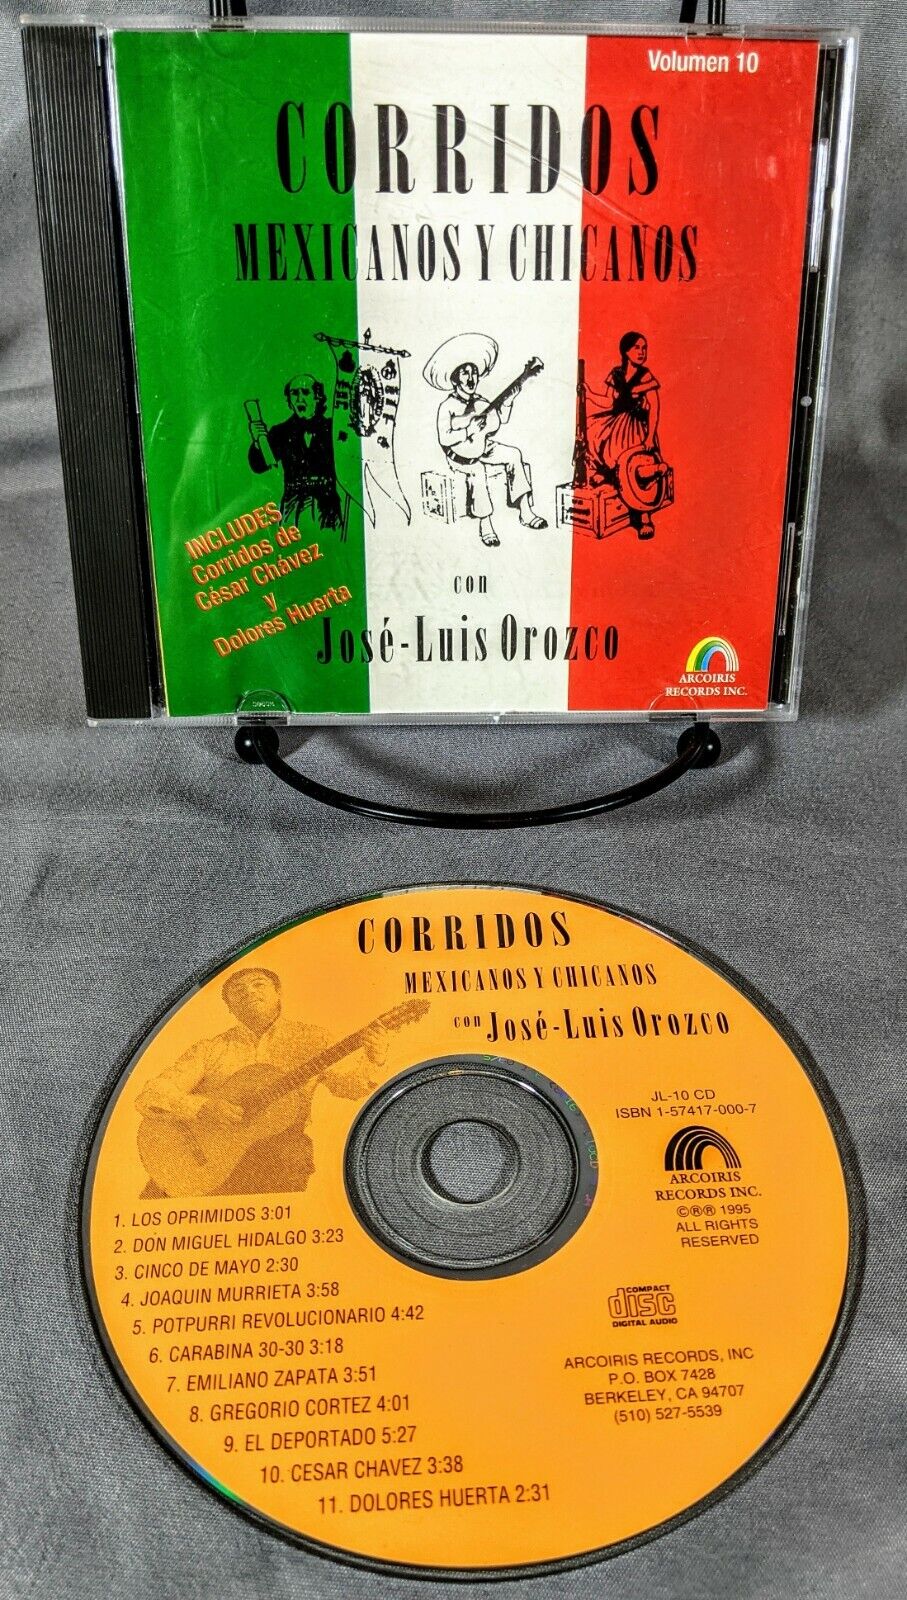 Jose-Luis Orozco - Con Corridos Mexicanos Y Chicanos - Latin CD - 